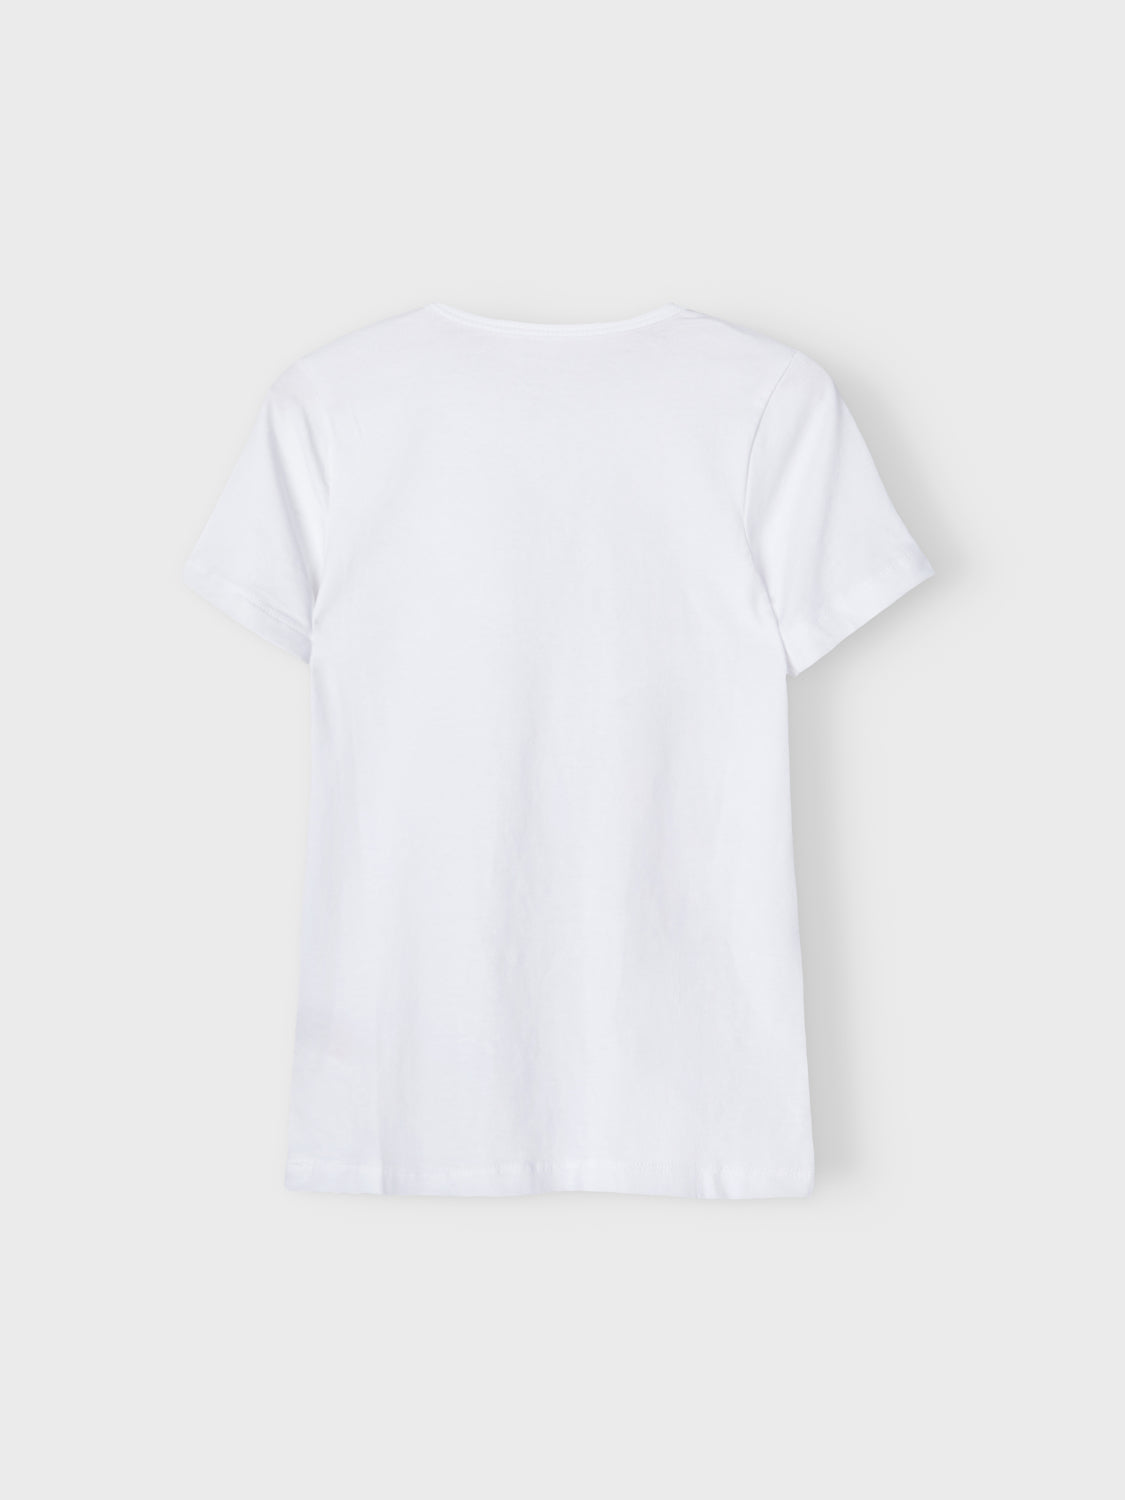 NKMT-SHIRT T-shirts & Tops - Bright White